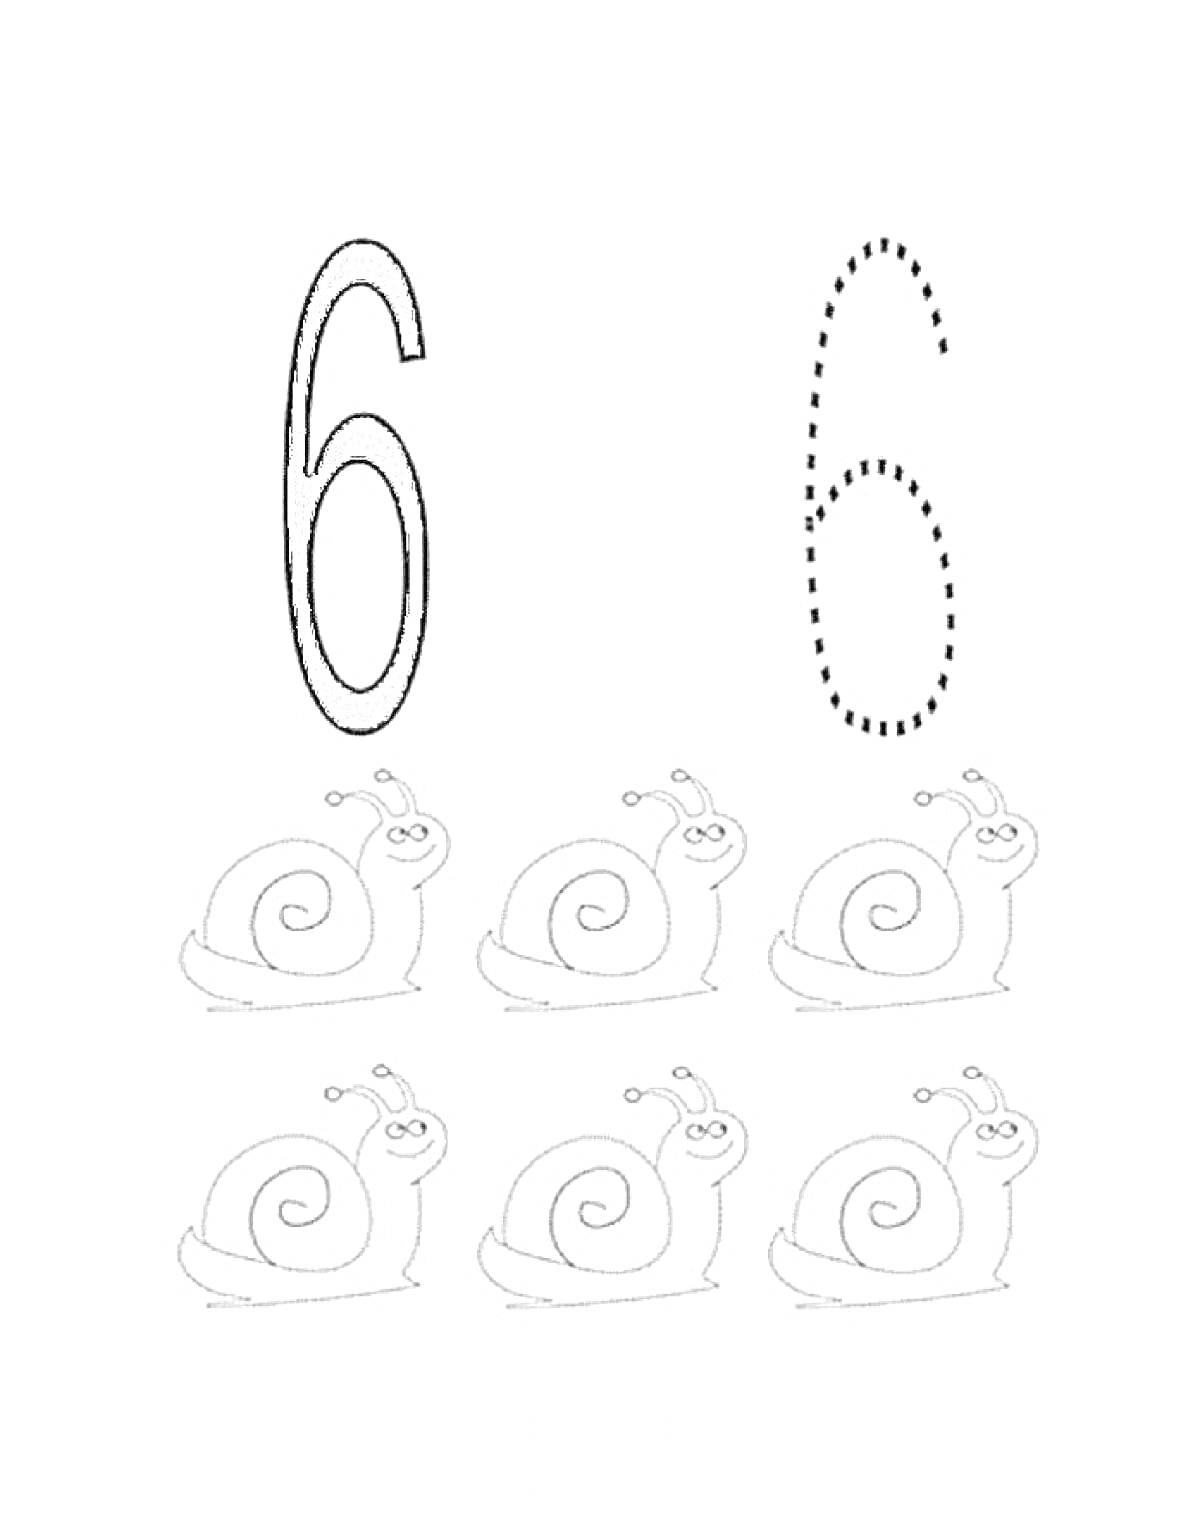 Цифра 6 с контуром и пятью улитками на раскраске